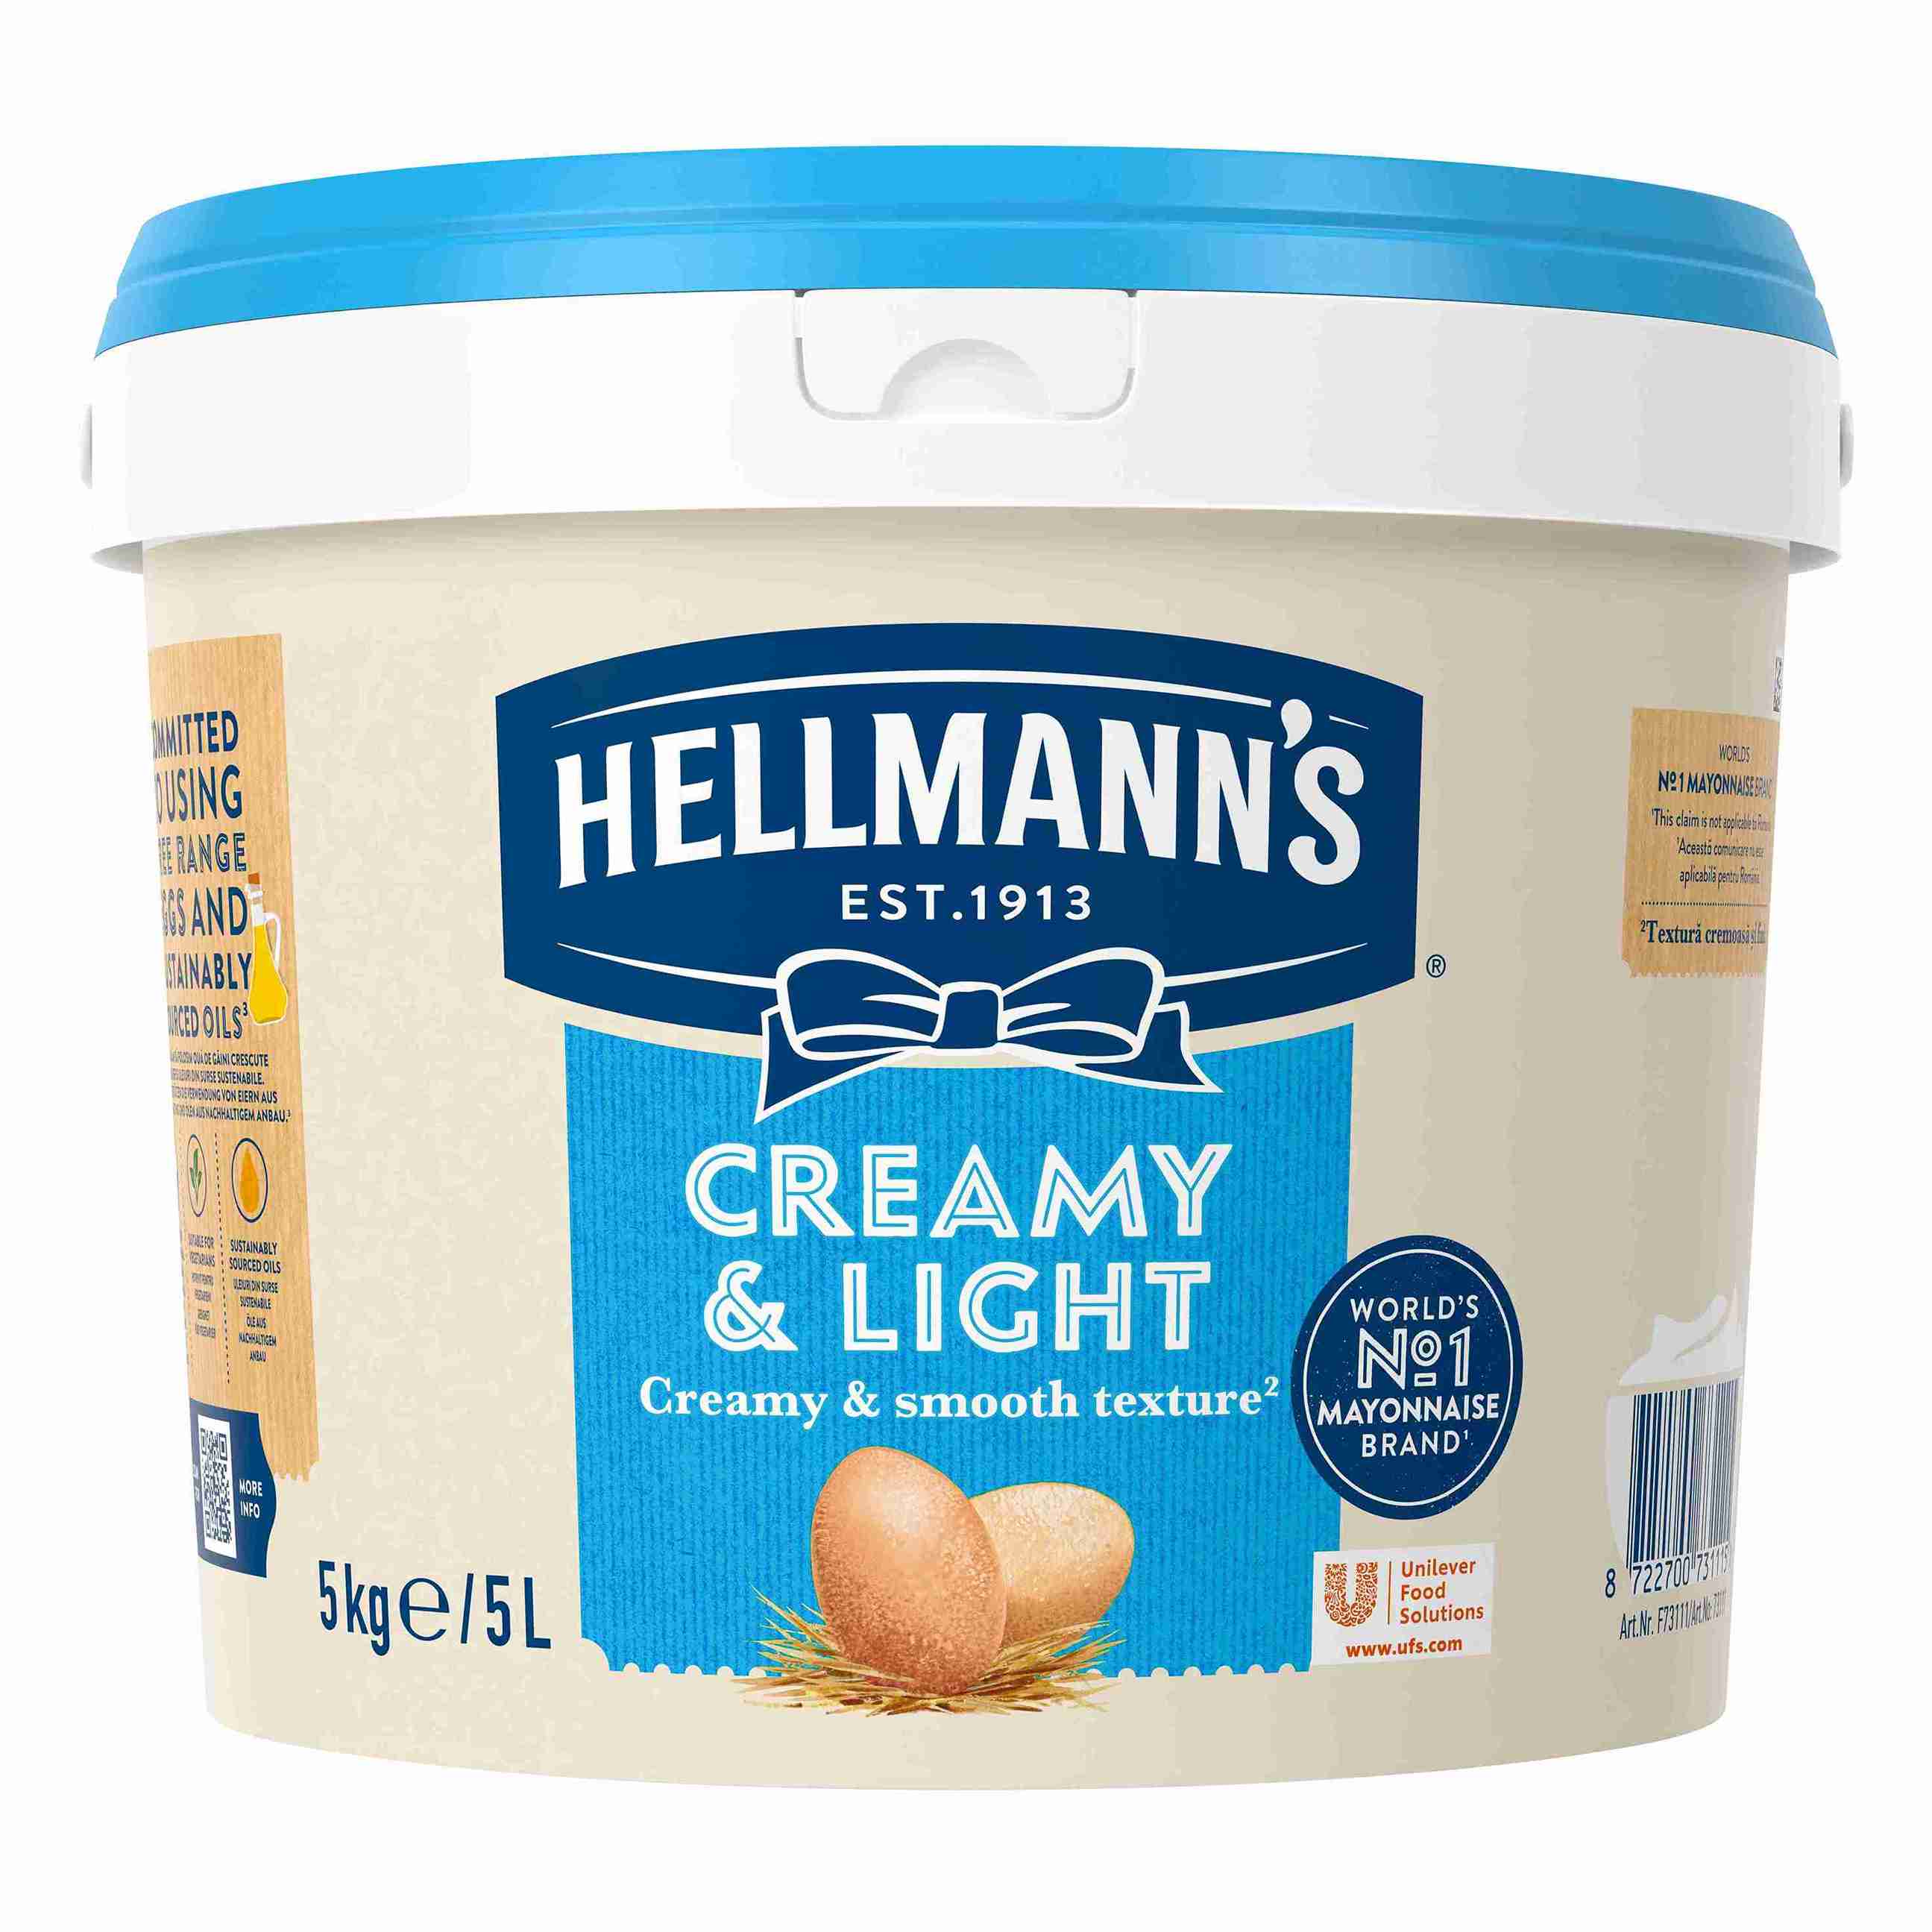 Hellmann's Creamy & Light Mayonnaise 5L (Nyhed 1. maj) - En fedtreduceret og velsmagende mayonnaise, der giver god kvalitet til en god pris.